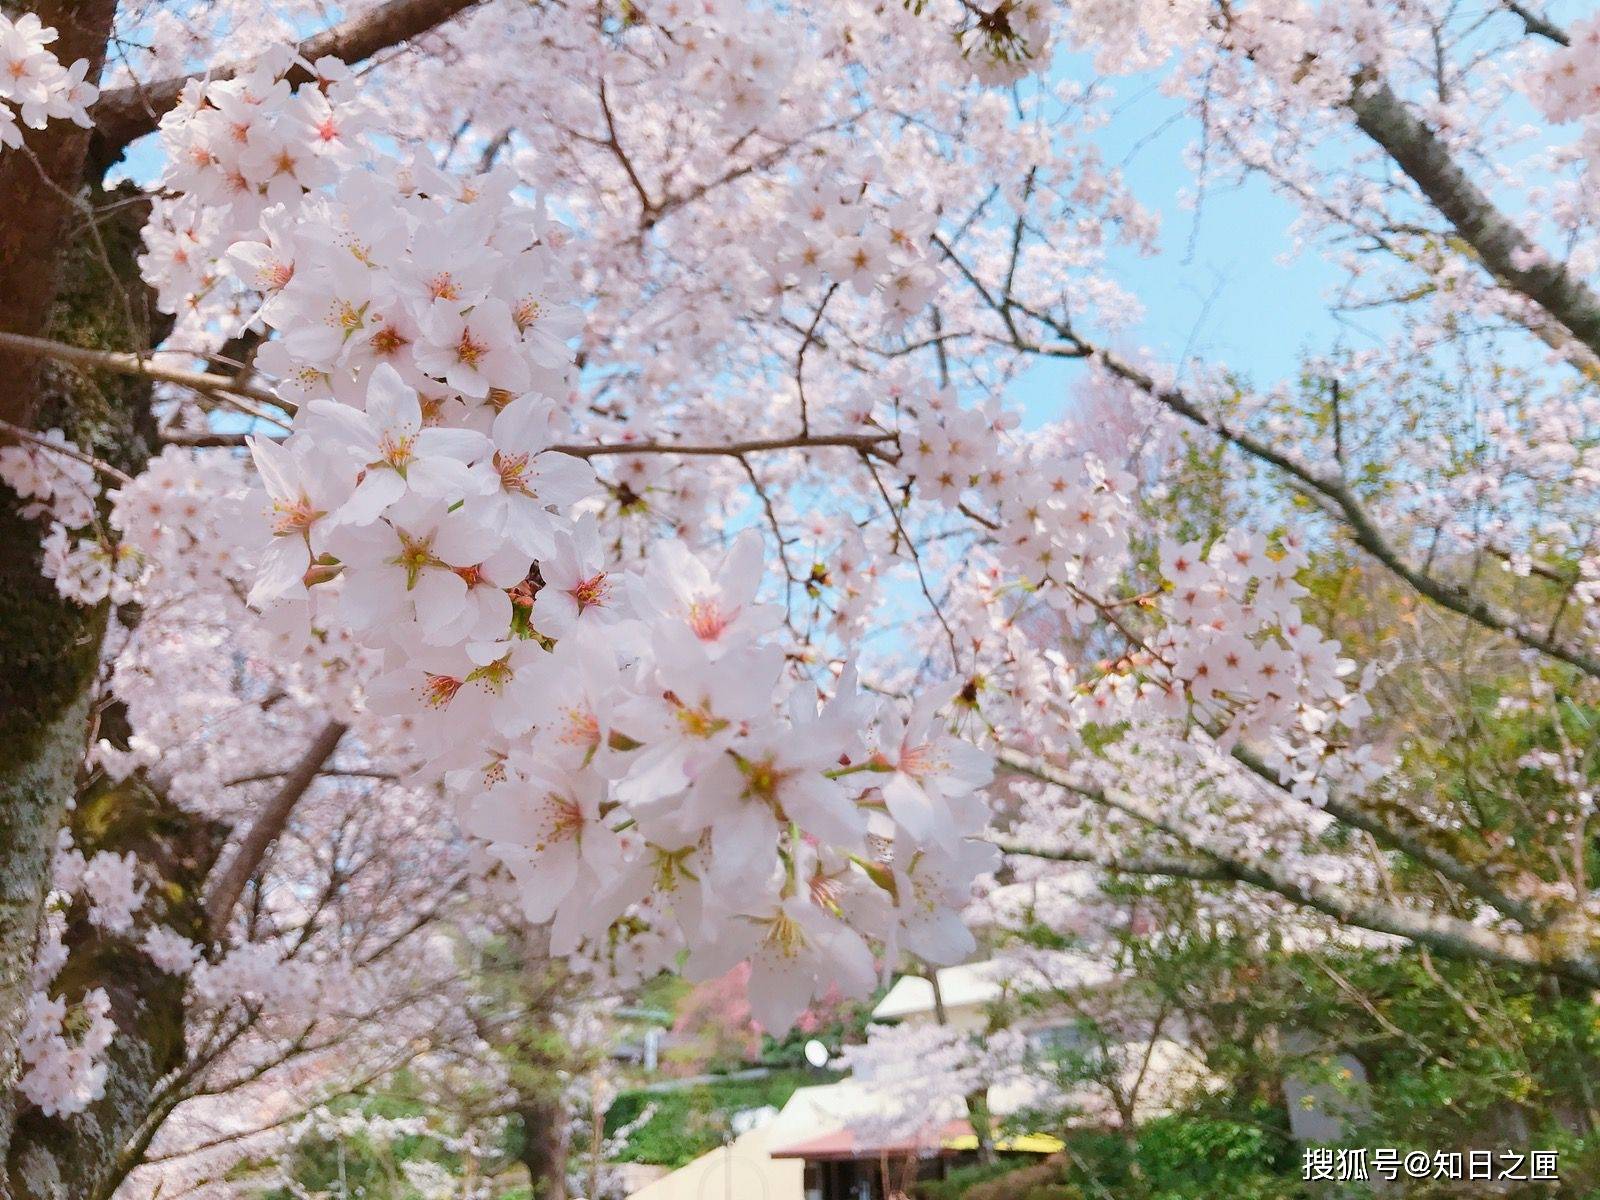 微笑和樱花一起盛开！能在春天的京都创造出粉红色回忆的美景！